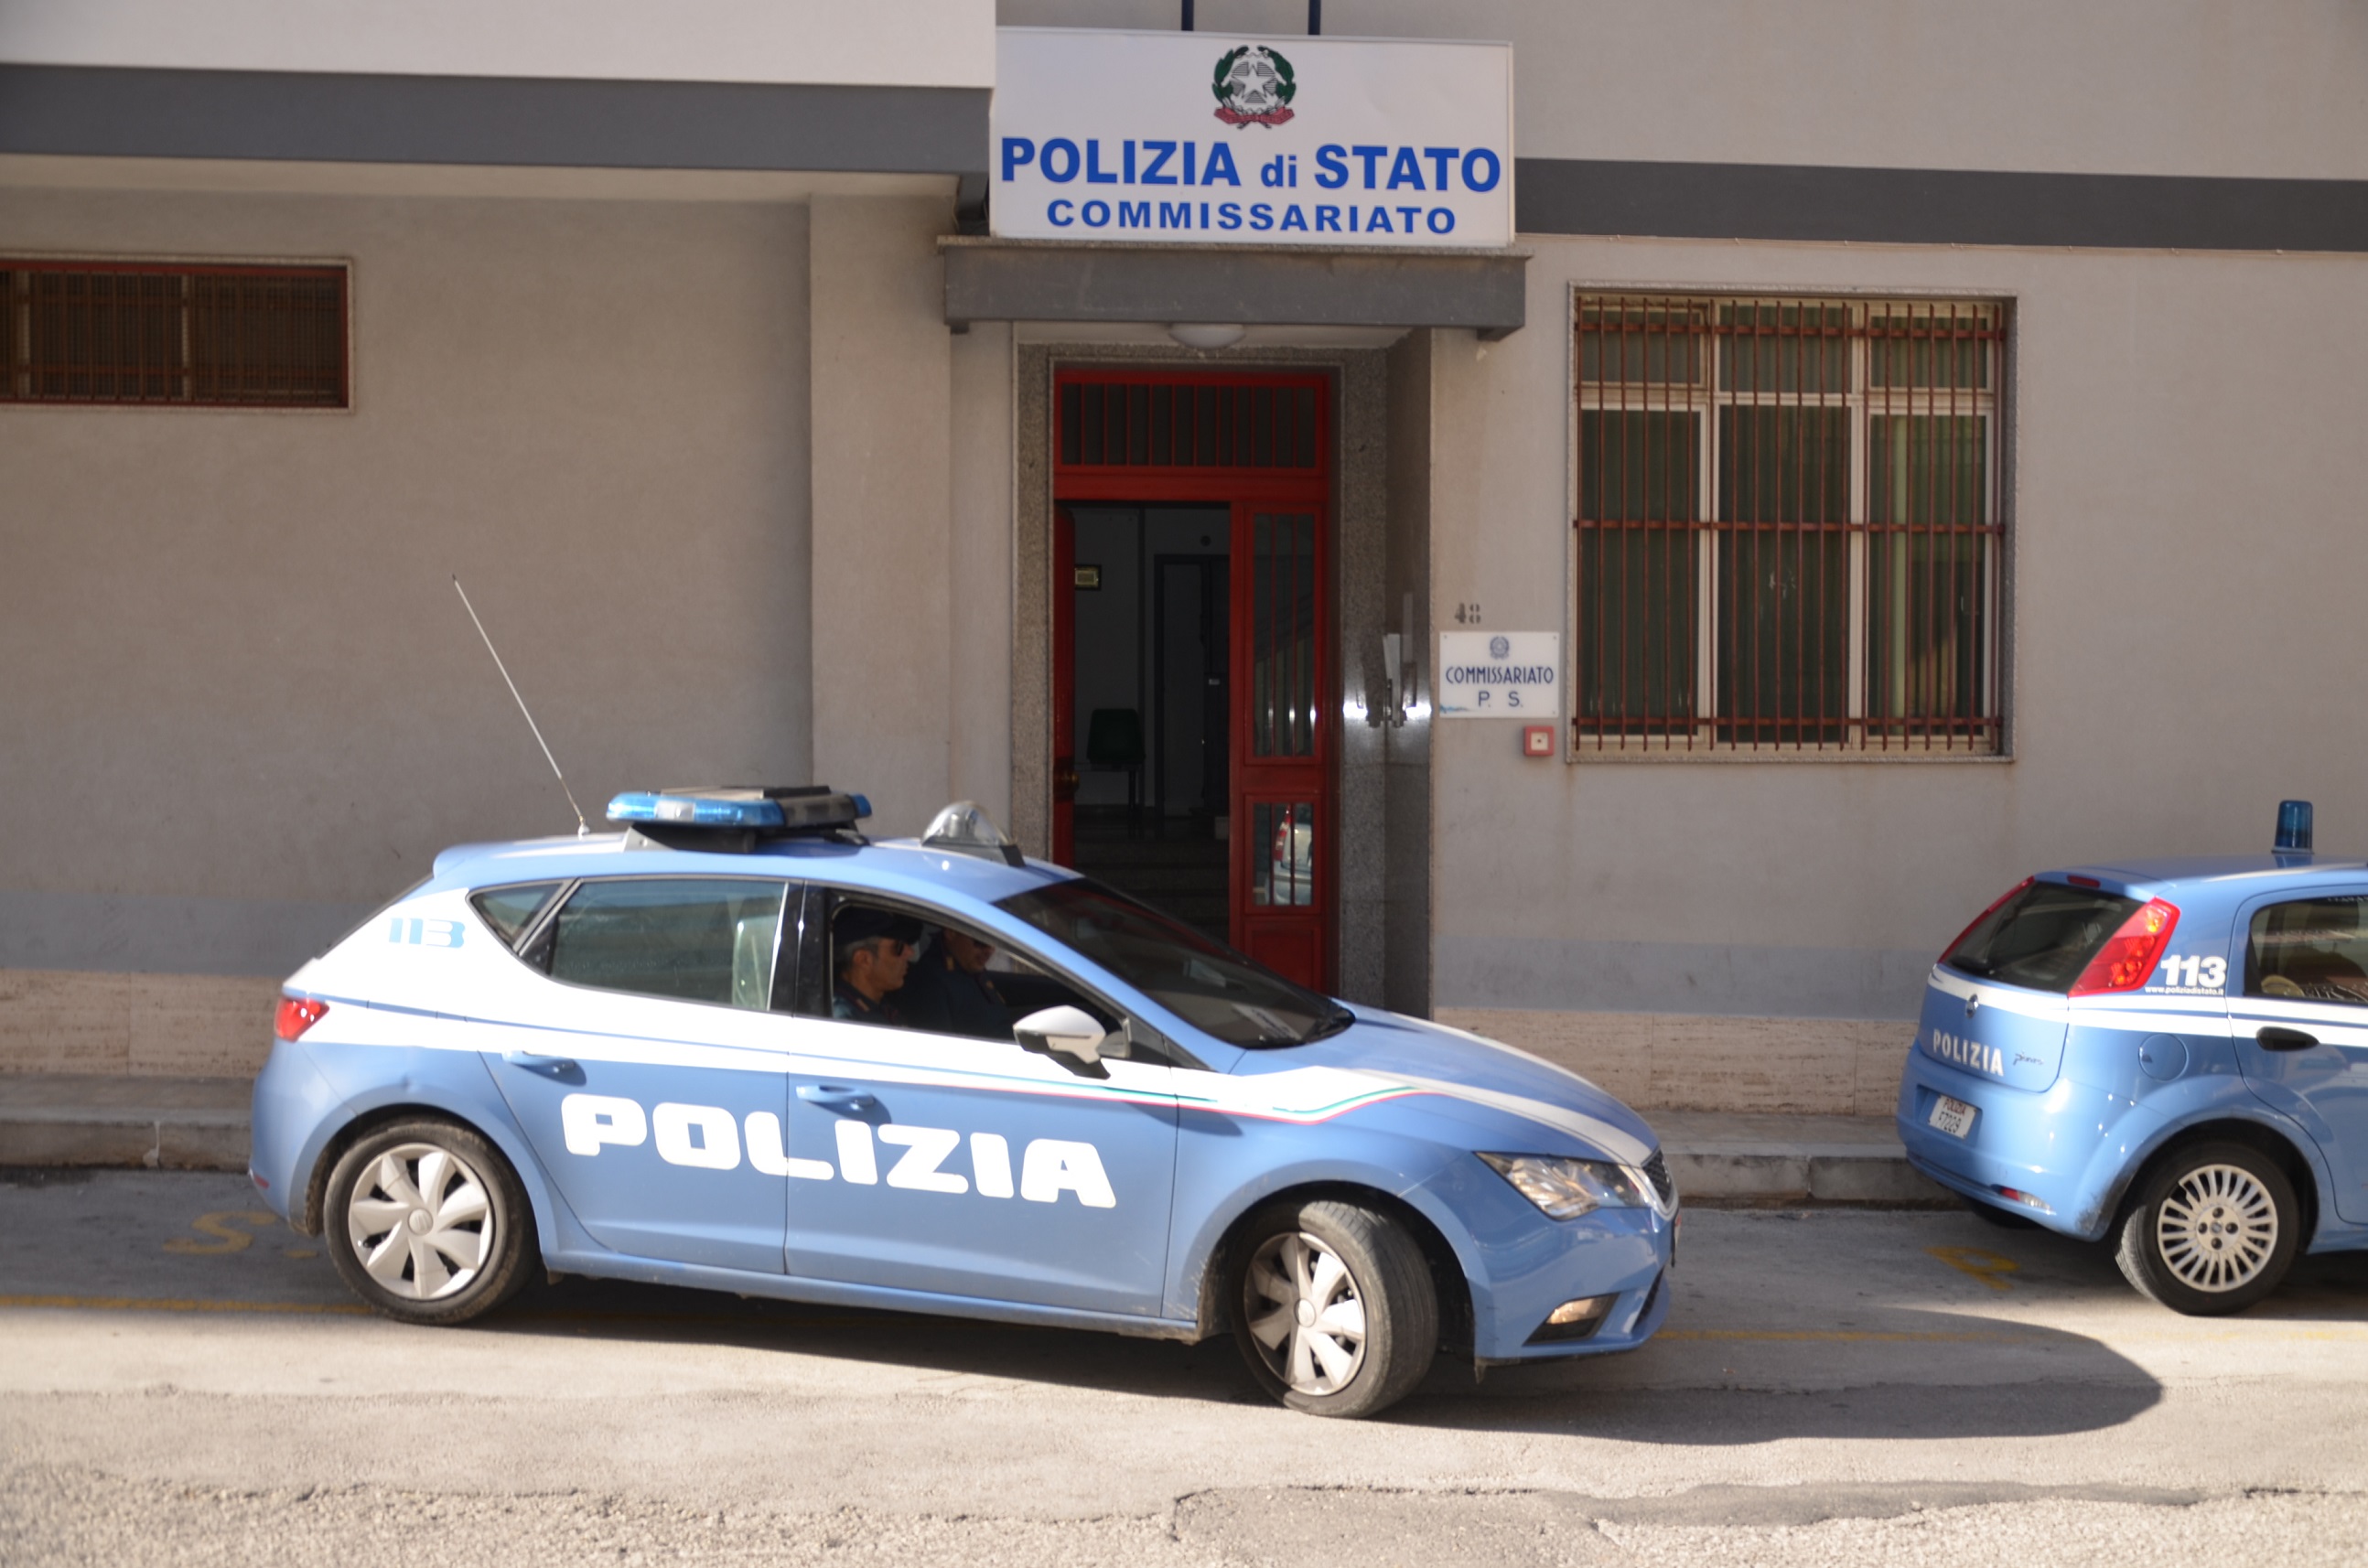  Modica – Ladri d’auto in trasferta a Modica: arrestati due ragusani di 36 e 39 anni